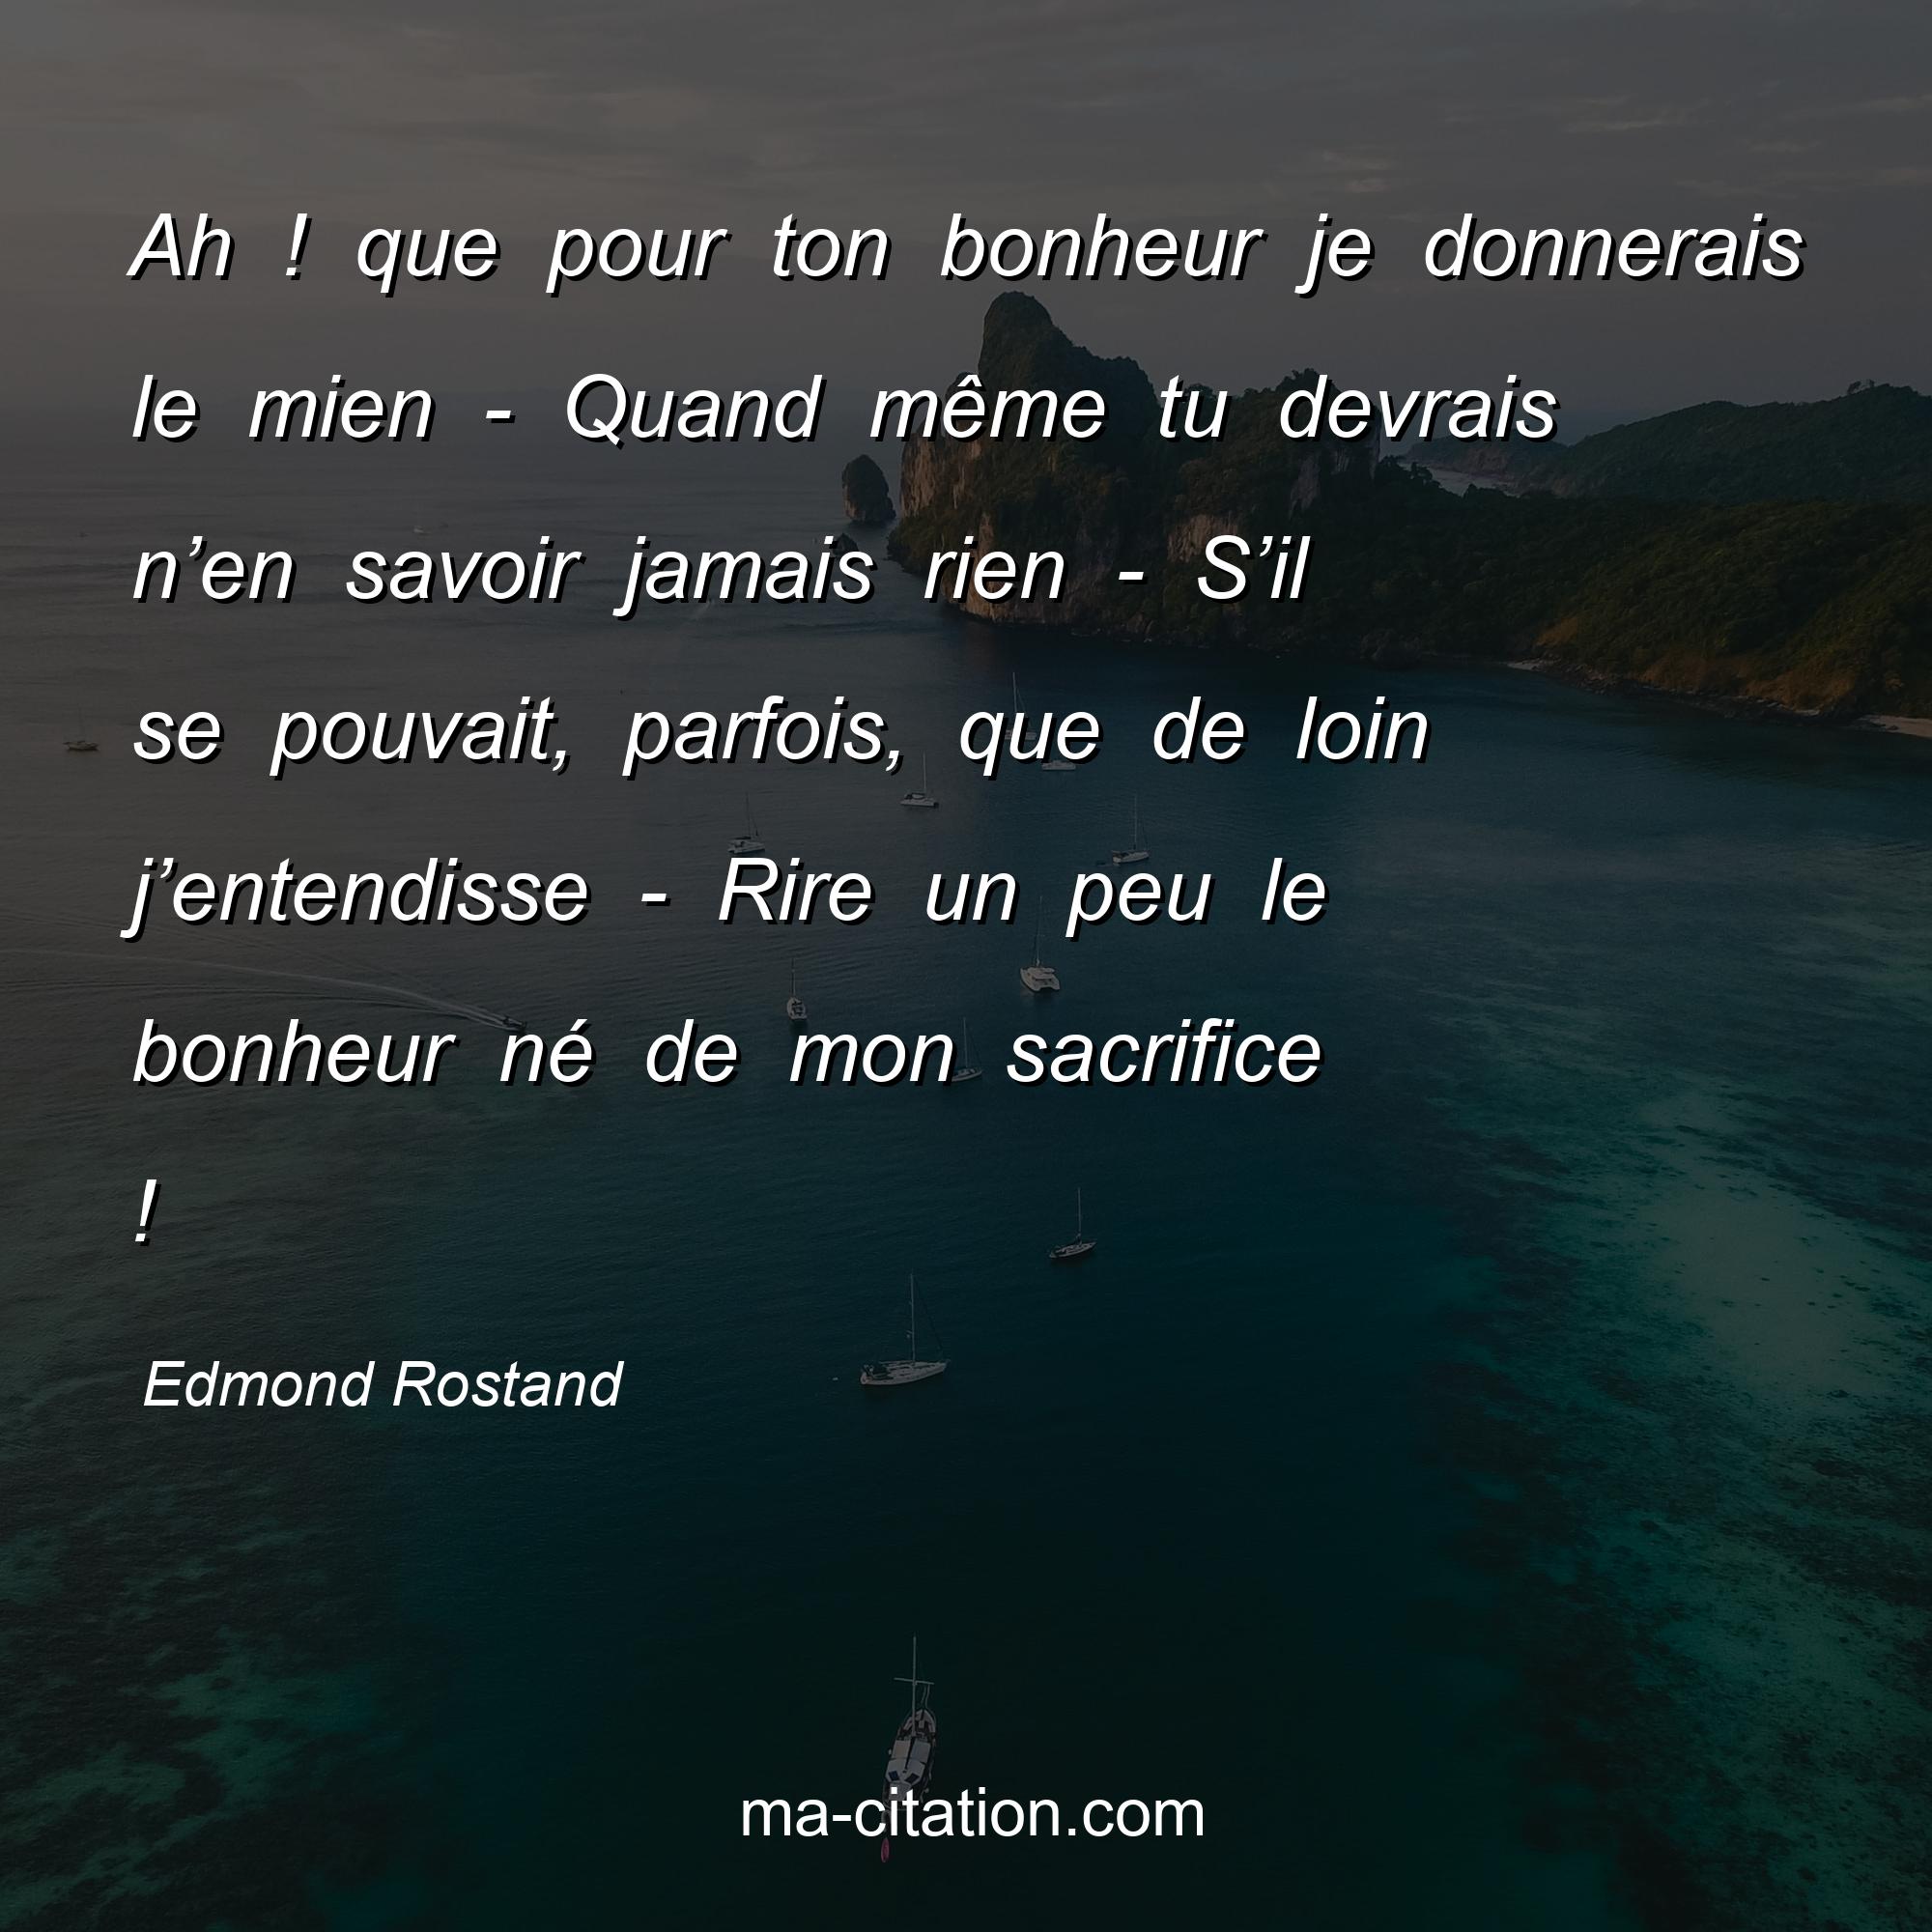 Edmond Rostand : Ah ! que pour ton bonheur je donnerais le mien - Quand même tu devrais n’en savoir jamais rien - S’il se pouvait, parfois, que de loin j’entendisse - Rire un peu le bonheur né de mon sacrifice !